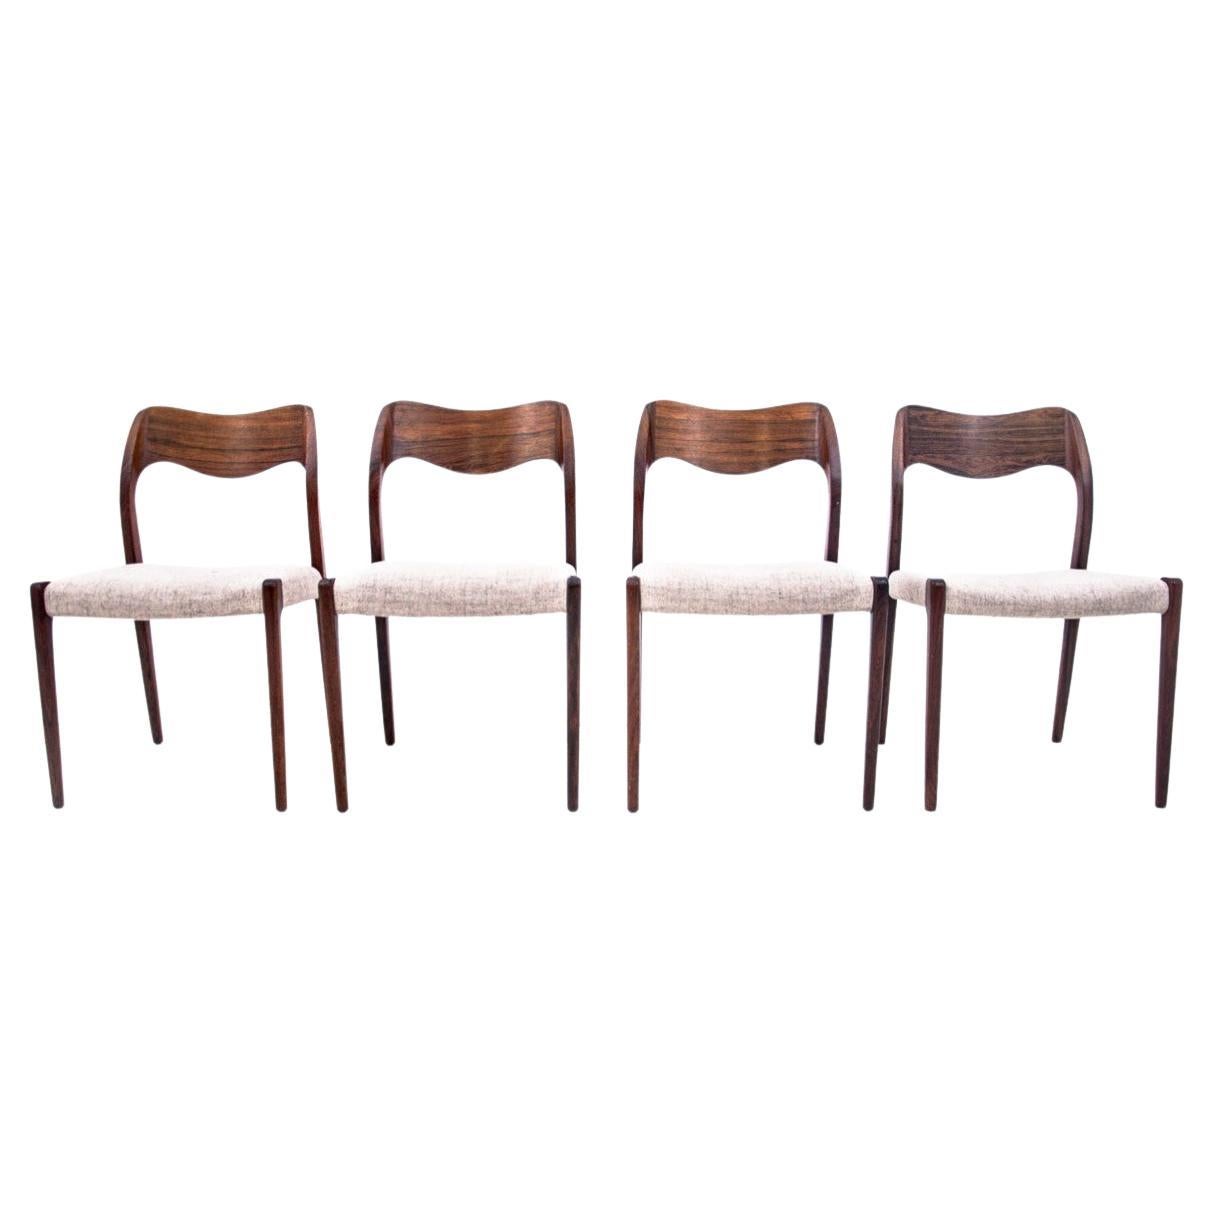 Four chairs, Niels O. Møller, model 71, Danish design, 1960s